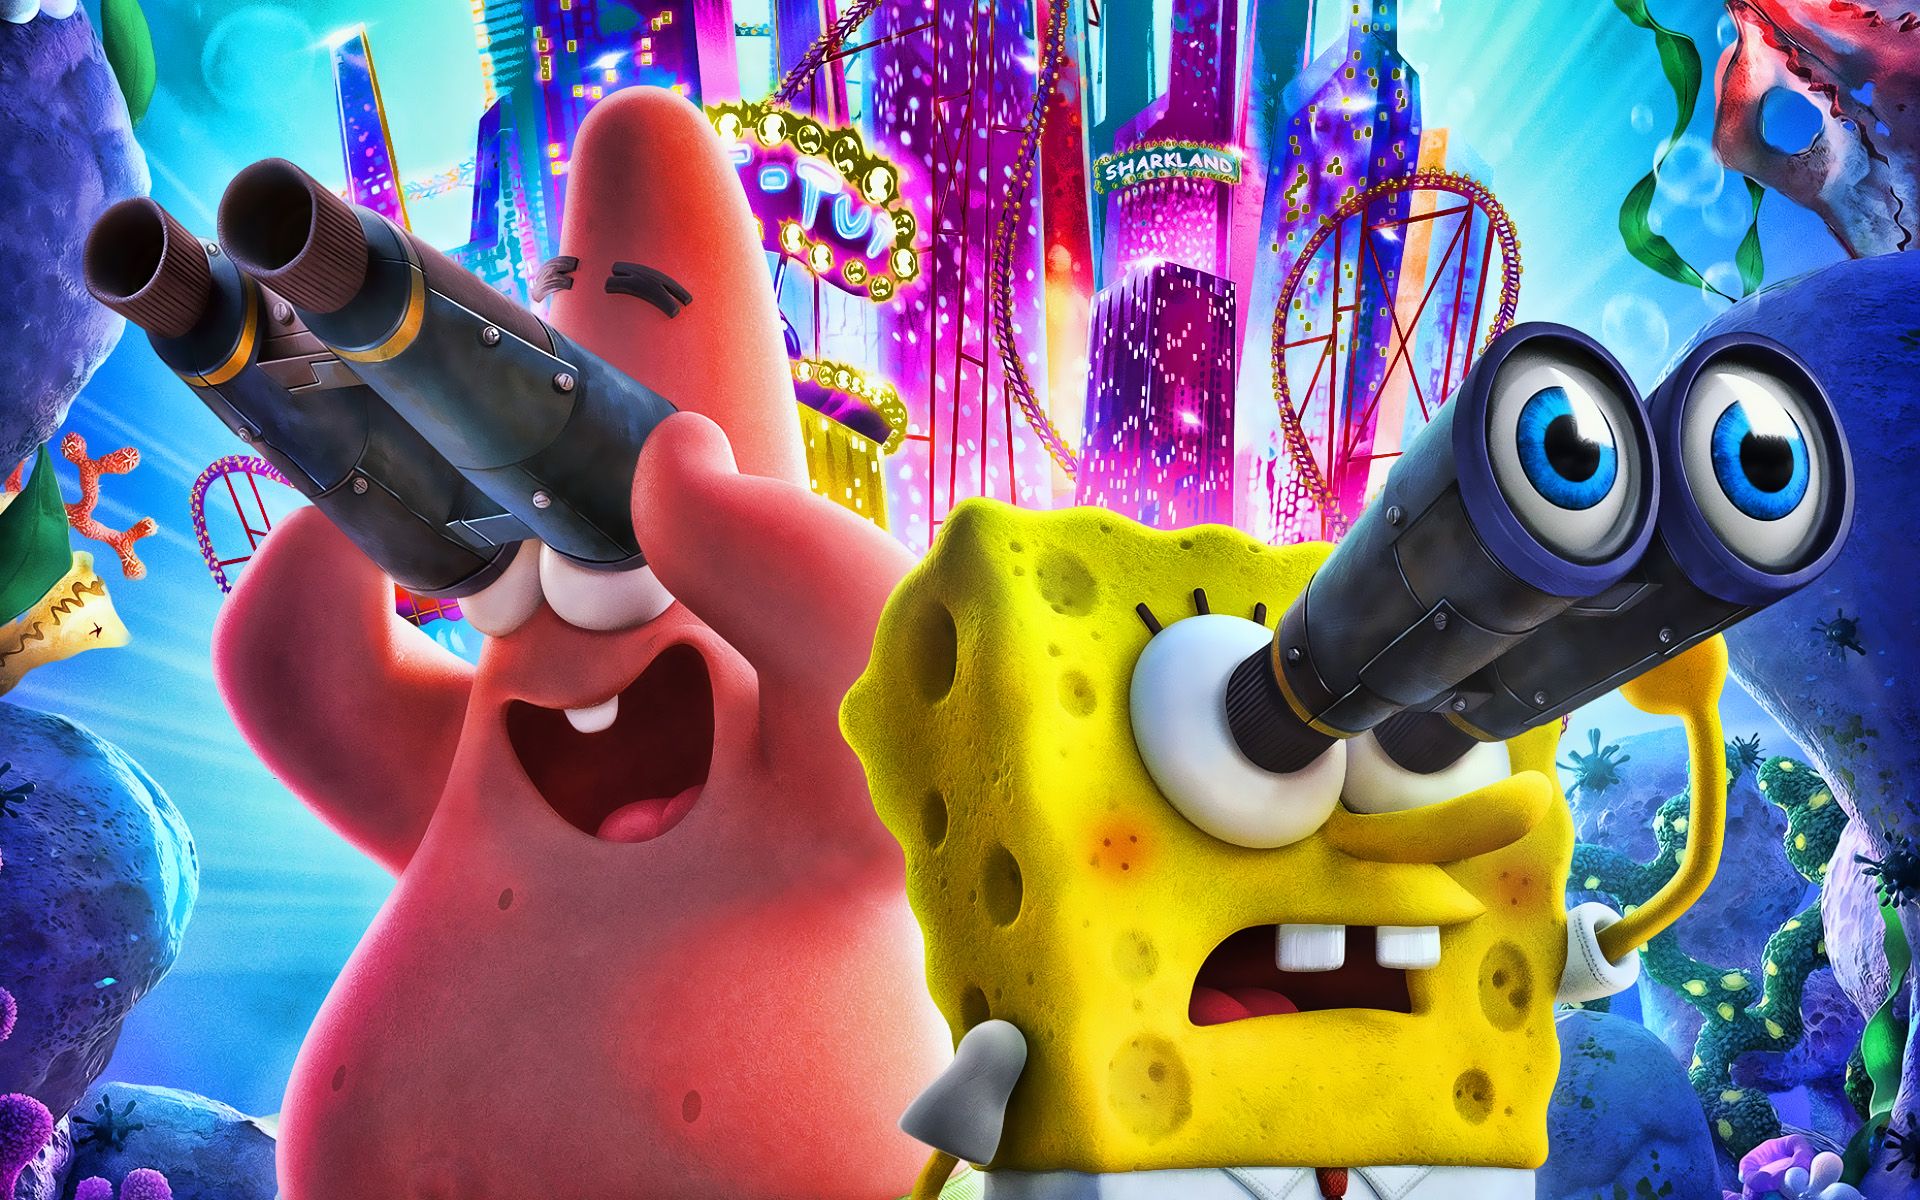 Download wallpapers SpongeBob SquarePants, Patrick Star, 2020.